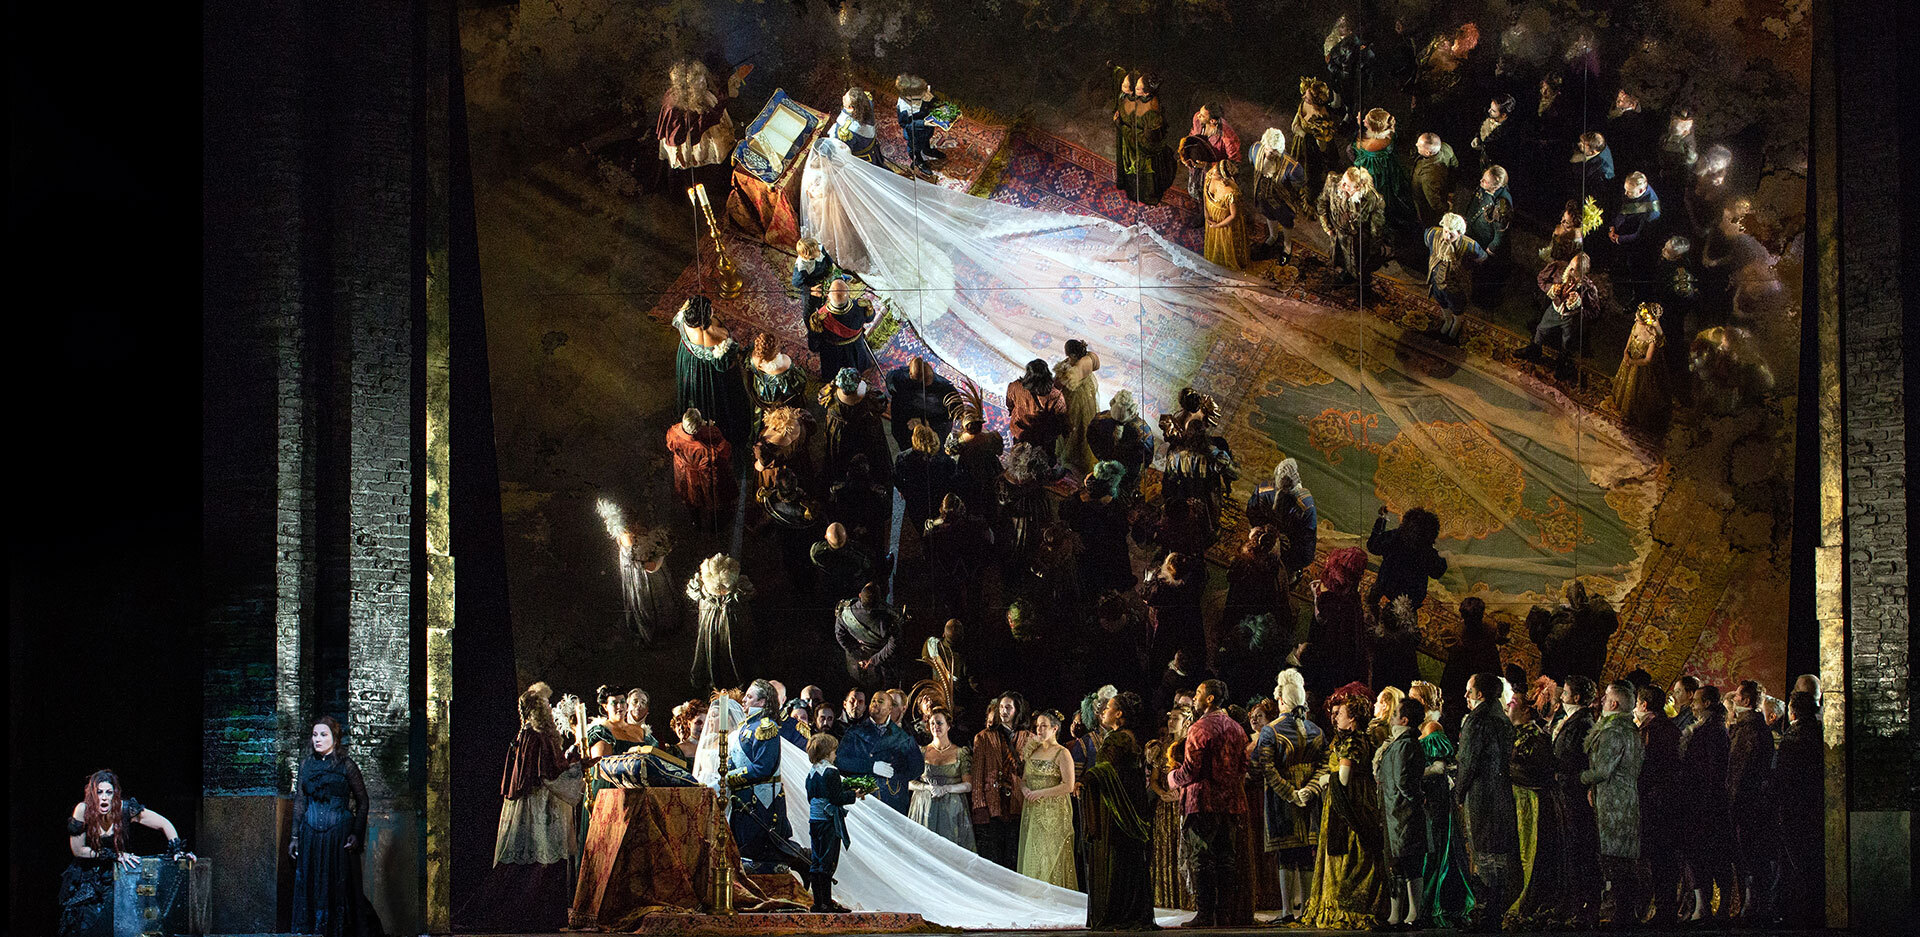 Μήδεια: Η ΕΛΣ τιμά την επέτειο των 100 χρόνων από τη γέννηση της Μαρίας Κάλλας με μια όπερα που σημάδεψε με την ερμηνεία της 